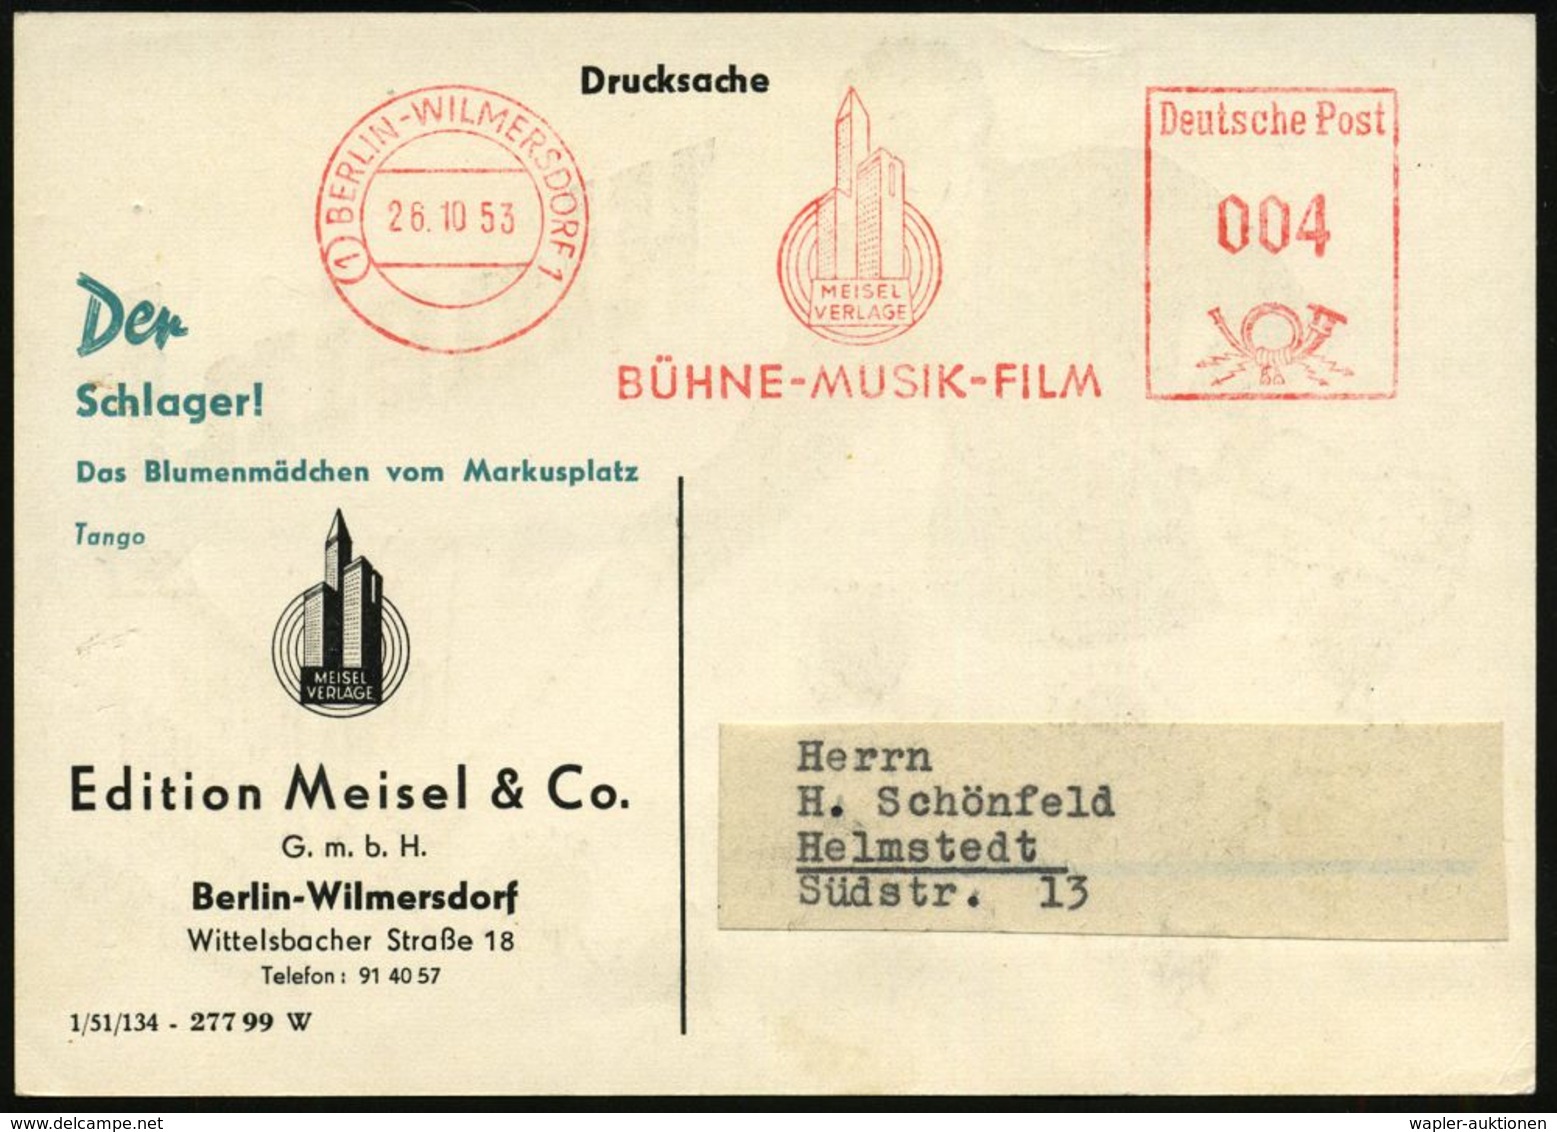 MUSIK-VERLAGE : (1) BERLIN-WILMERSDORF1/ MEISEL/ VERLAGE/ BÜHNE-MUSIK-FILM 1953 (26.10.) AFS (Logo: Hochhäuser, Schall-w - Music